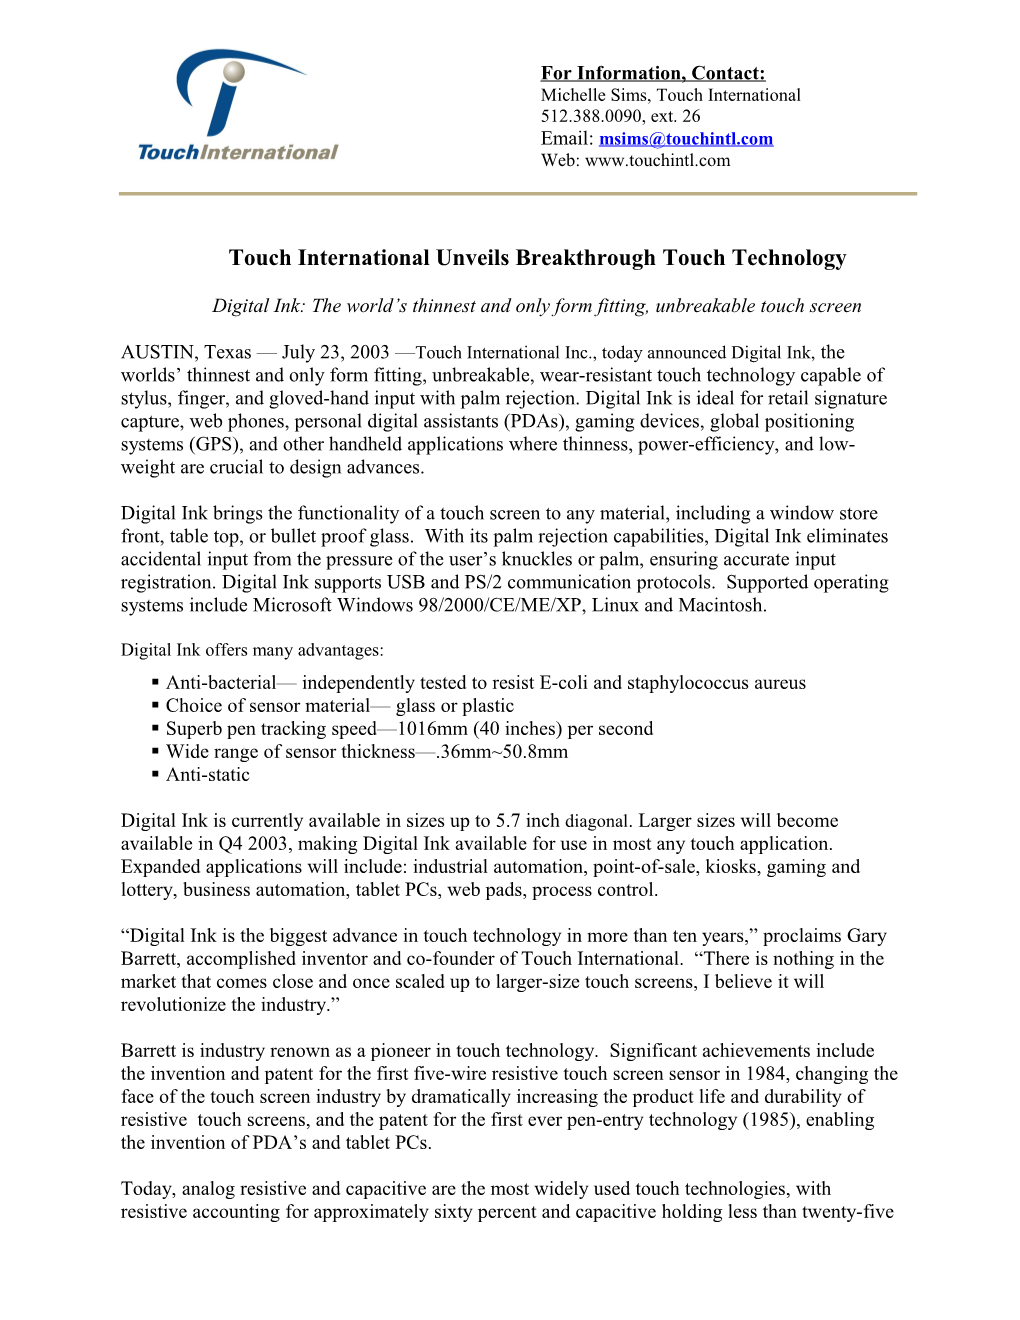 Touch International Announcement